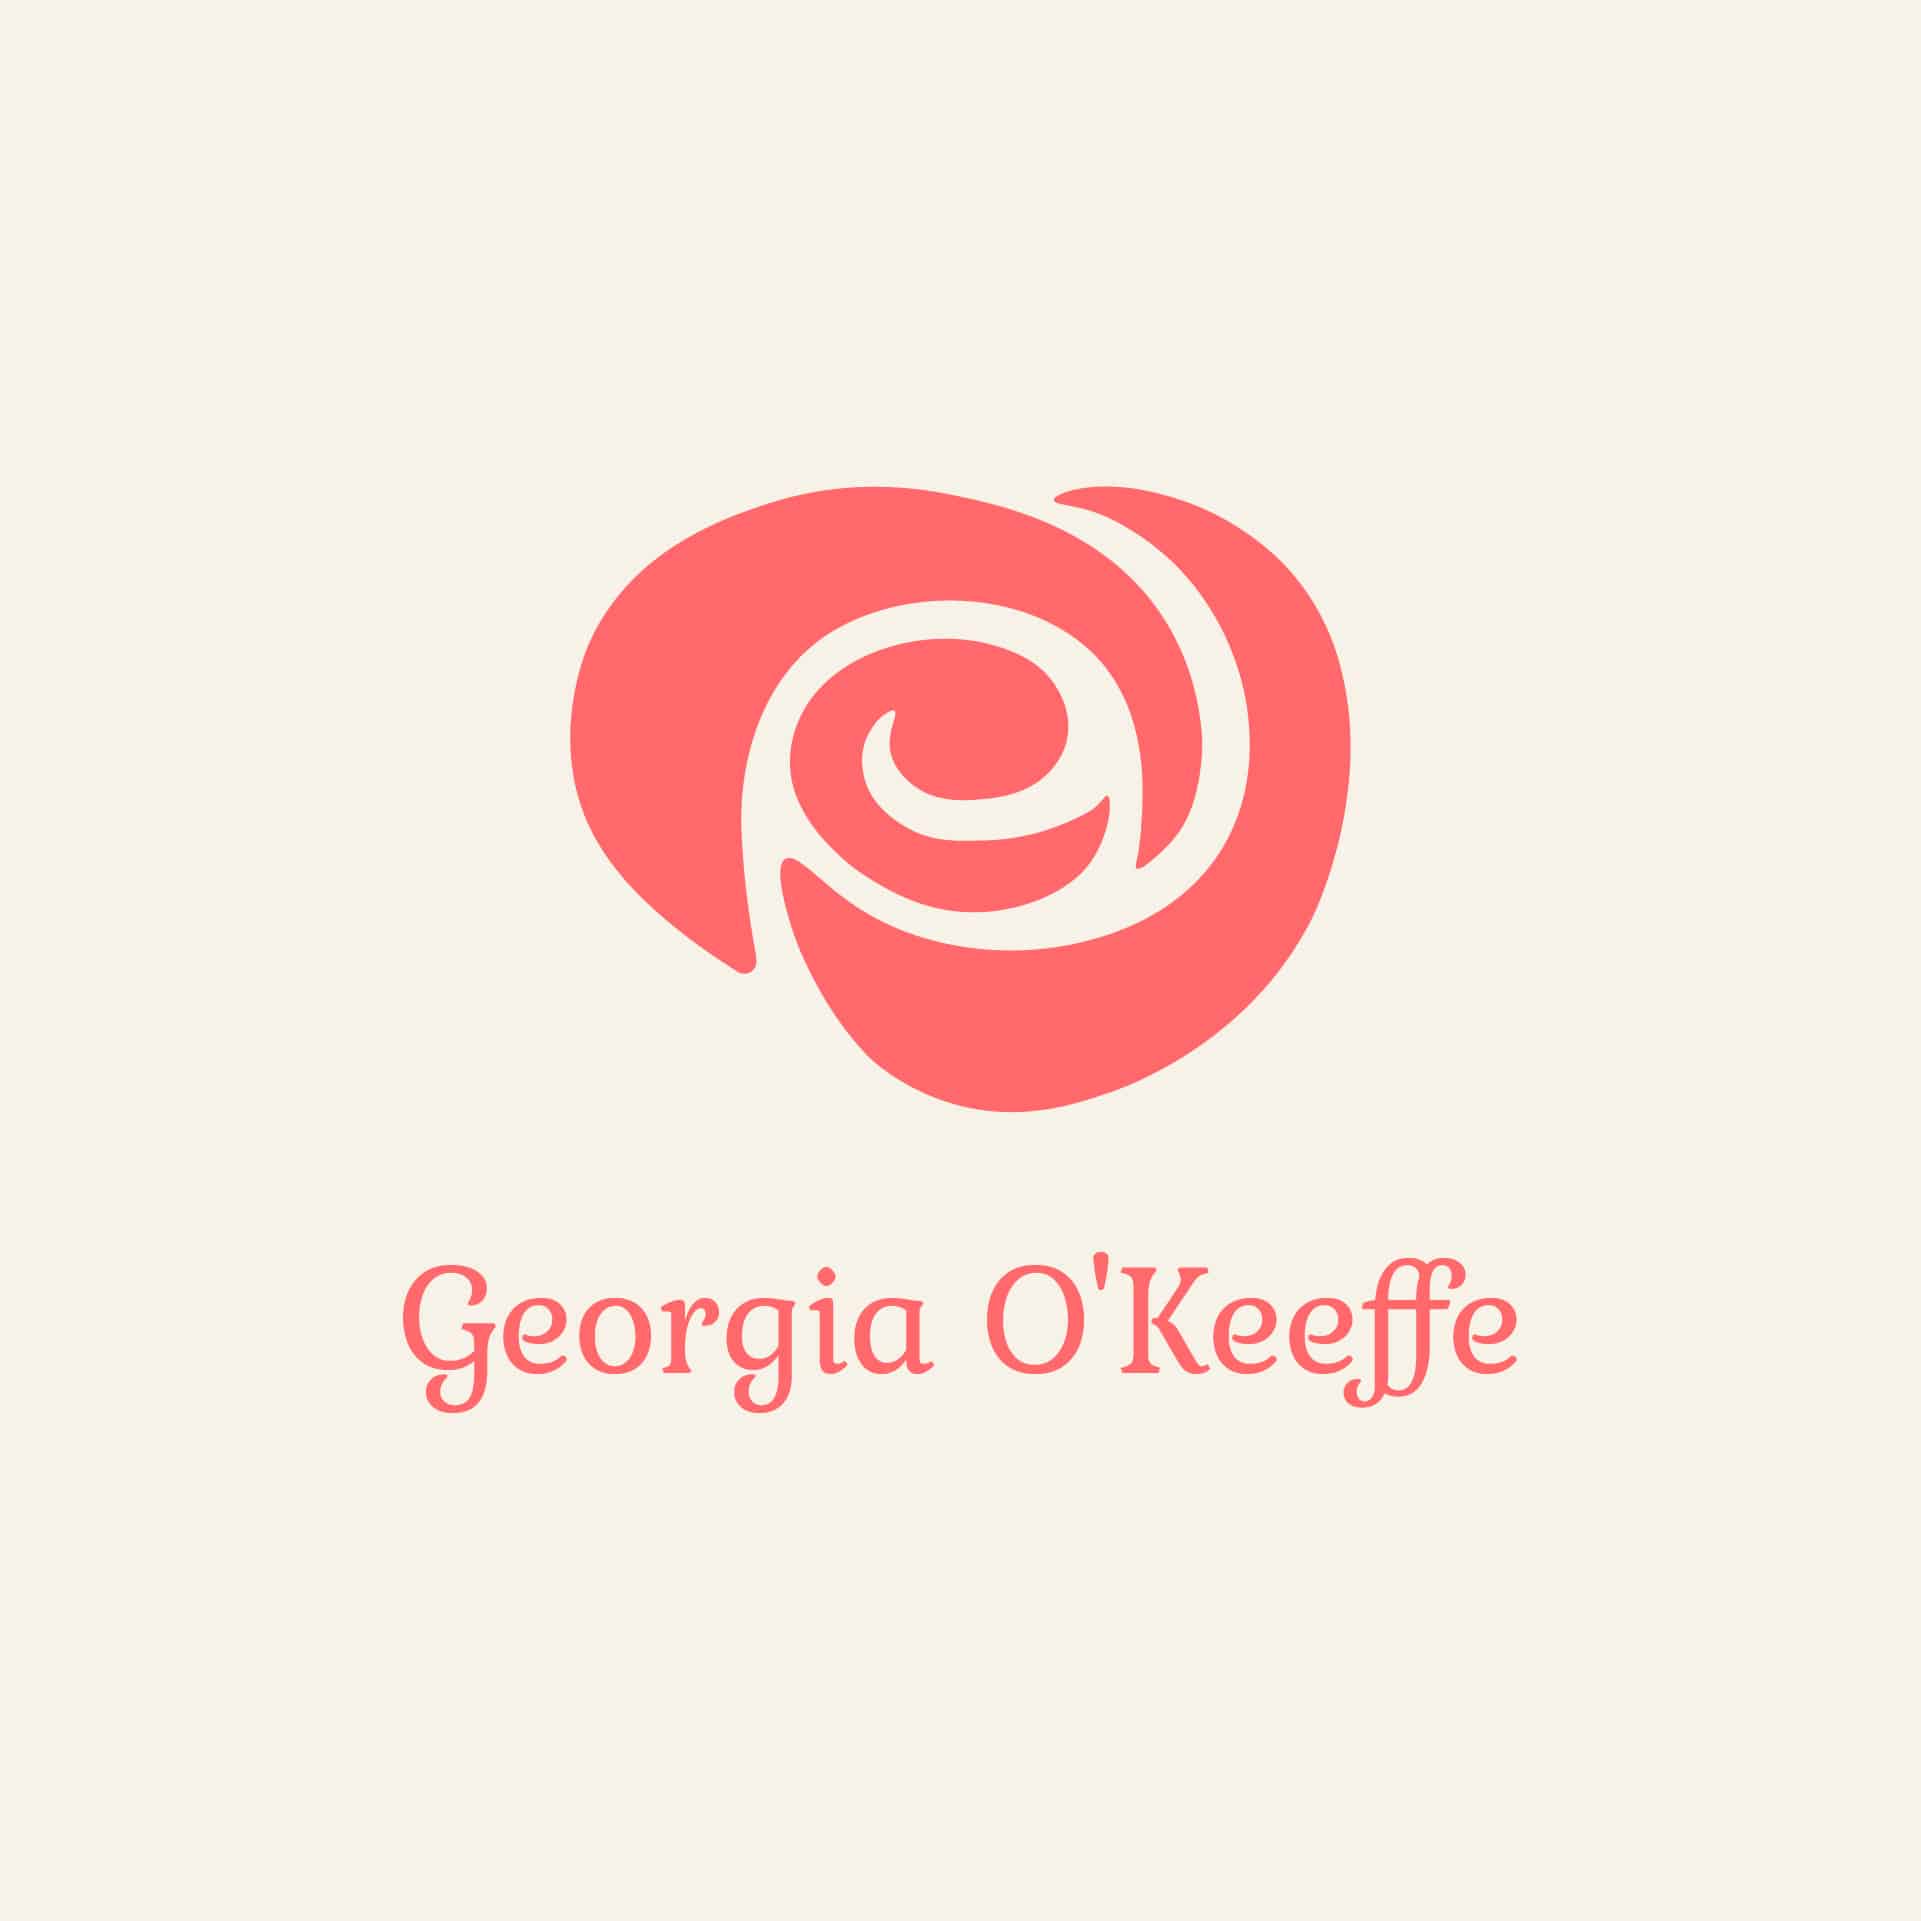 Georgia O'Keeffe logo